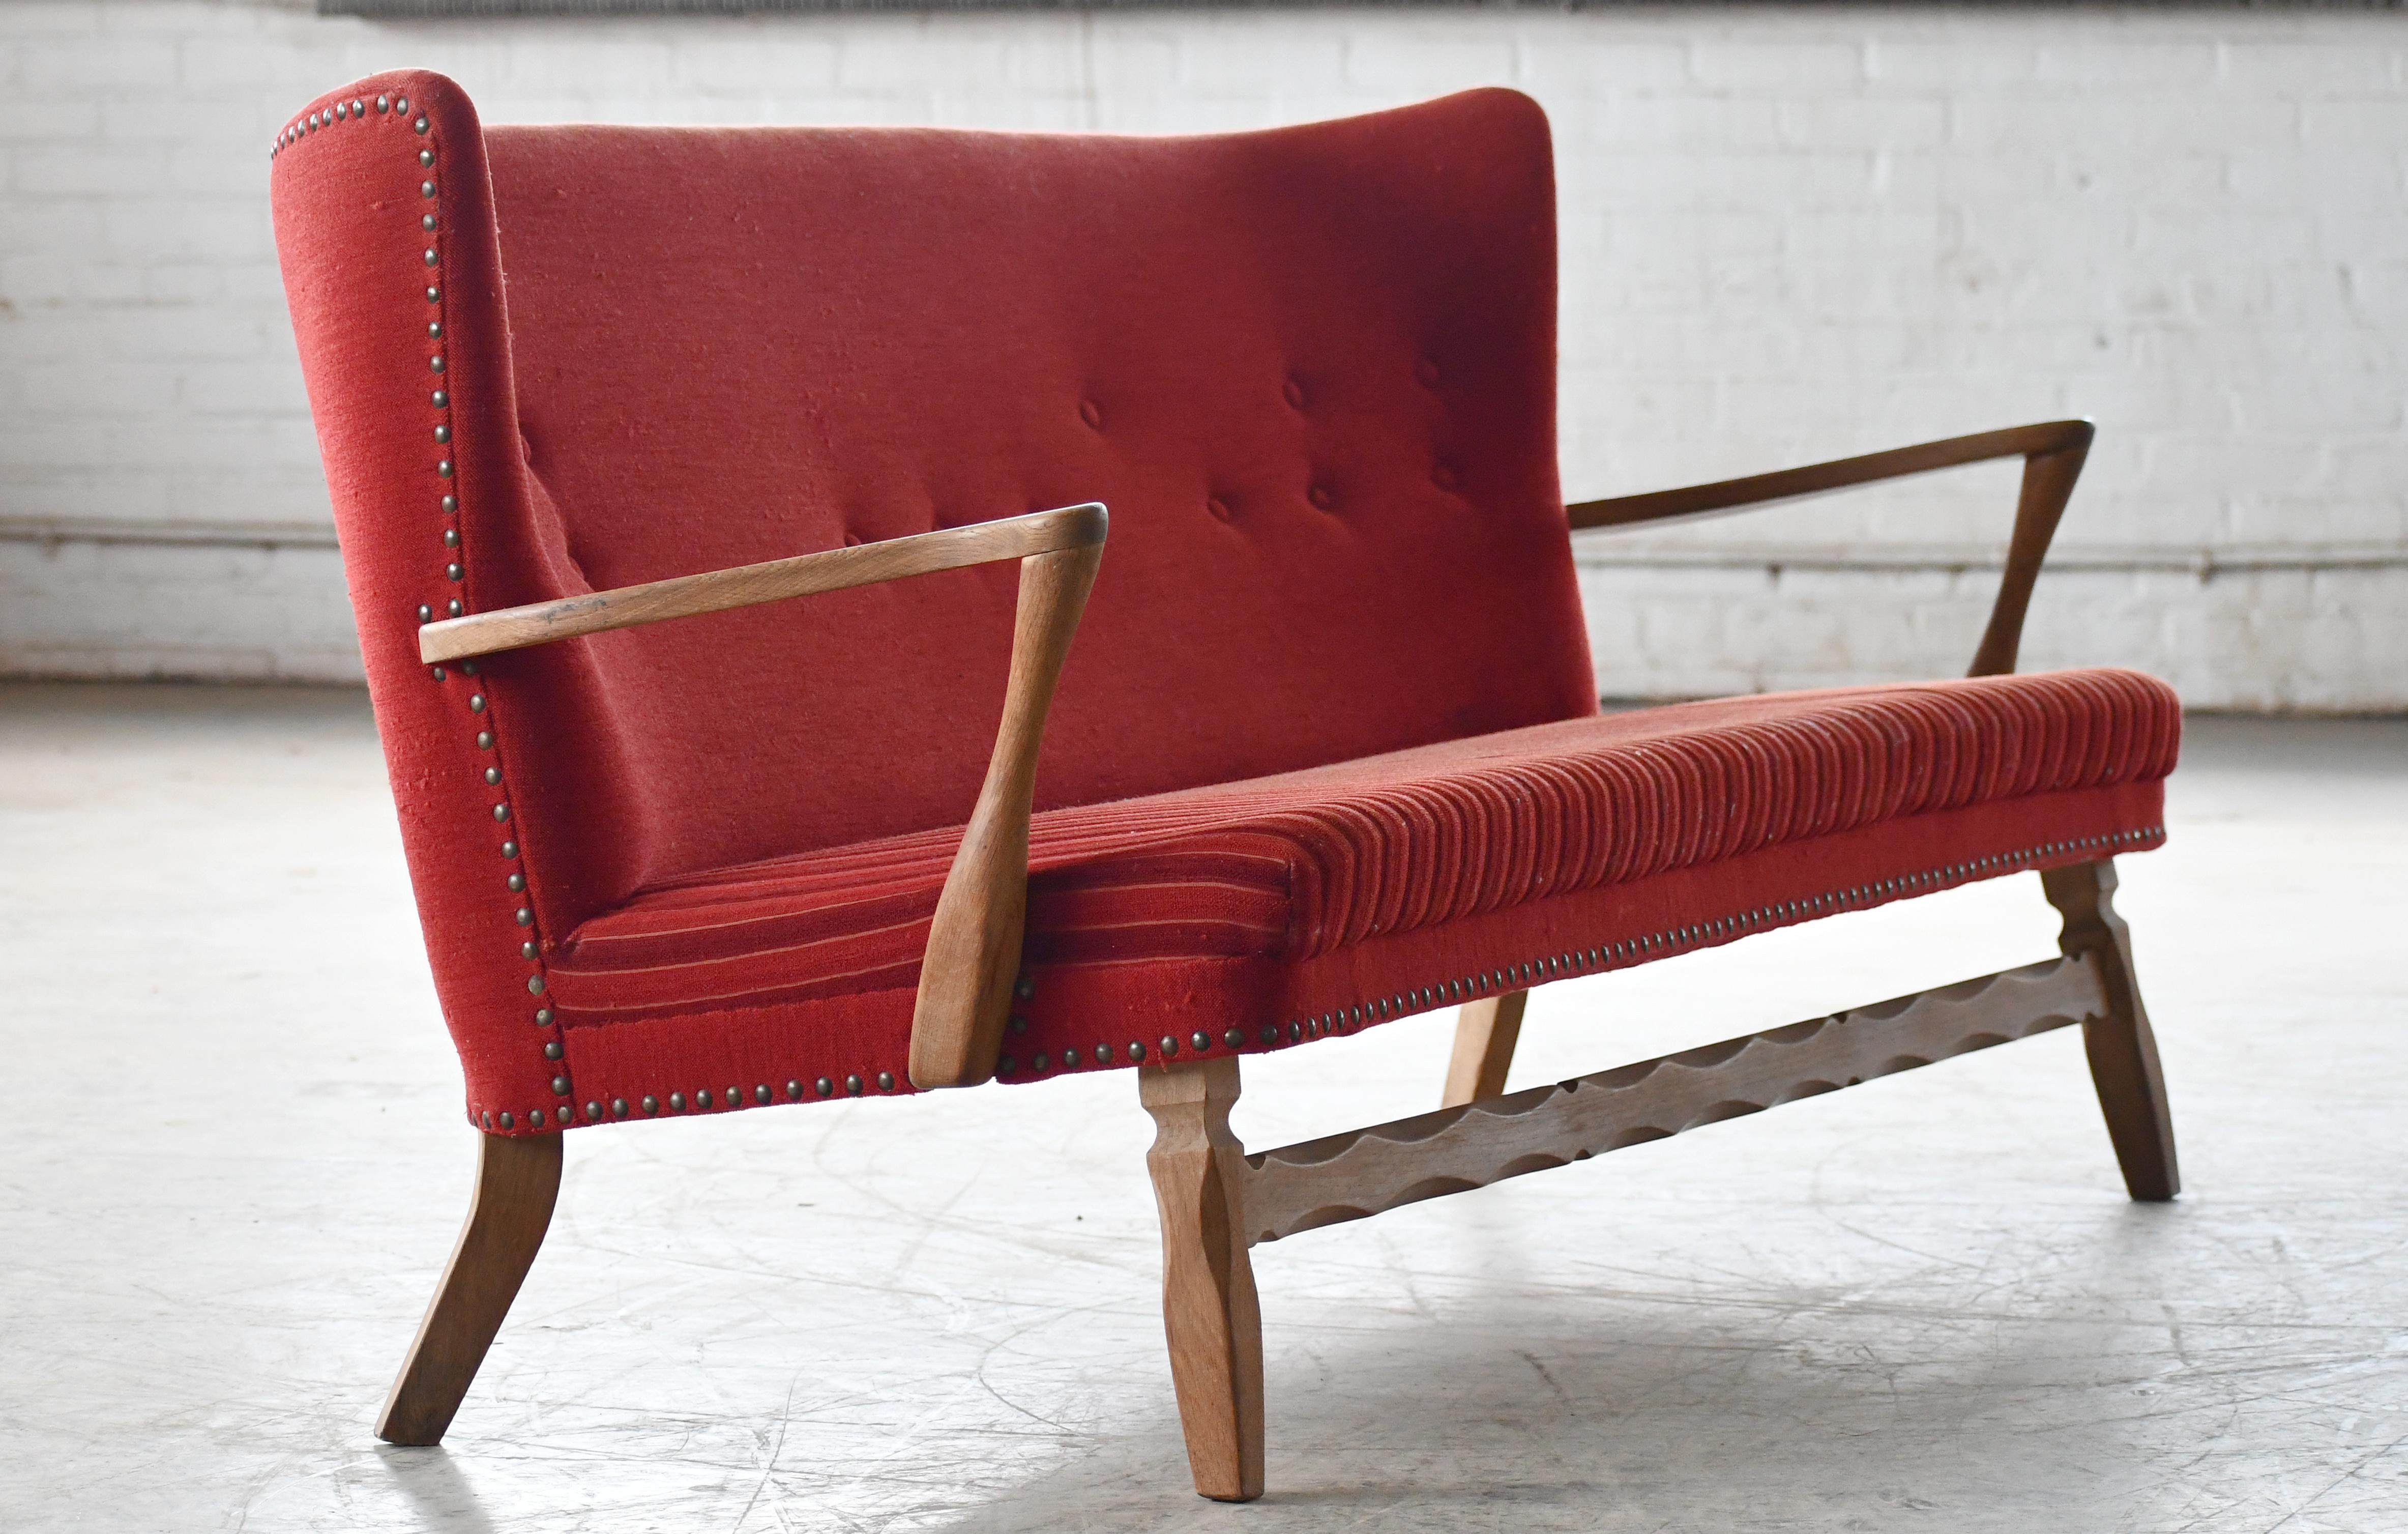 Fantastisches Sofa aus den 1950er Jahren mit roter Wolle und schön geschnitztem Eichengestell und offenen Armlehnen. Sehr raffinierte, klare Linien und ein fast bankartiger Stil des Sofas. Es ist ein ungewöhnliches Stück und schwer zu datieren, aber